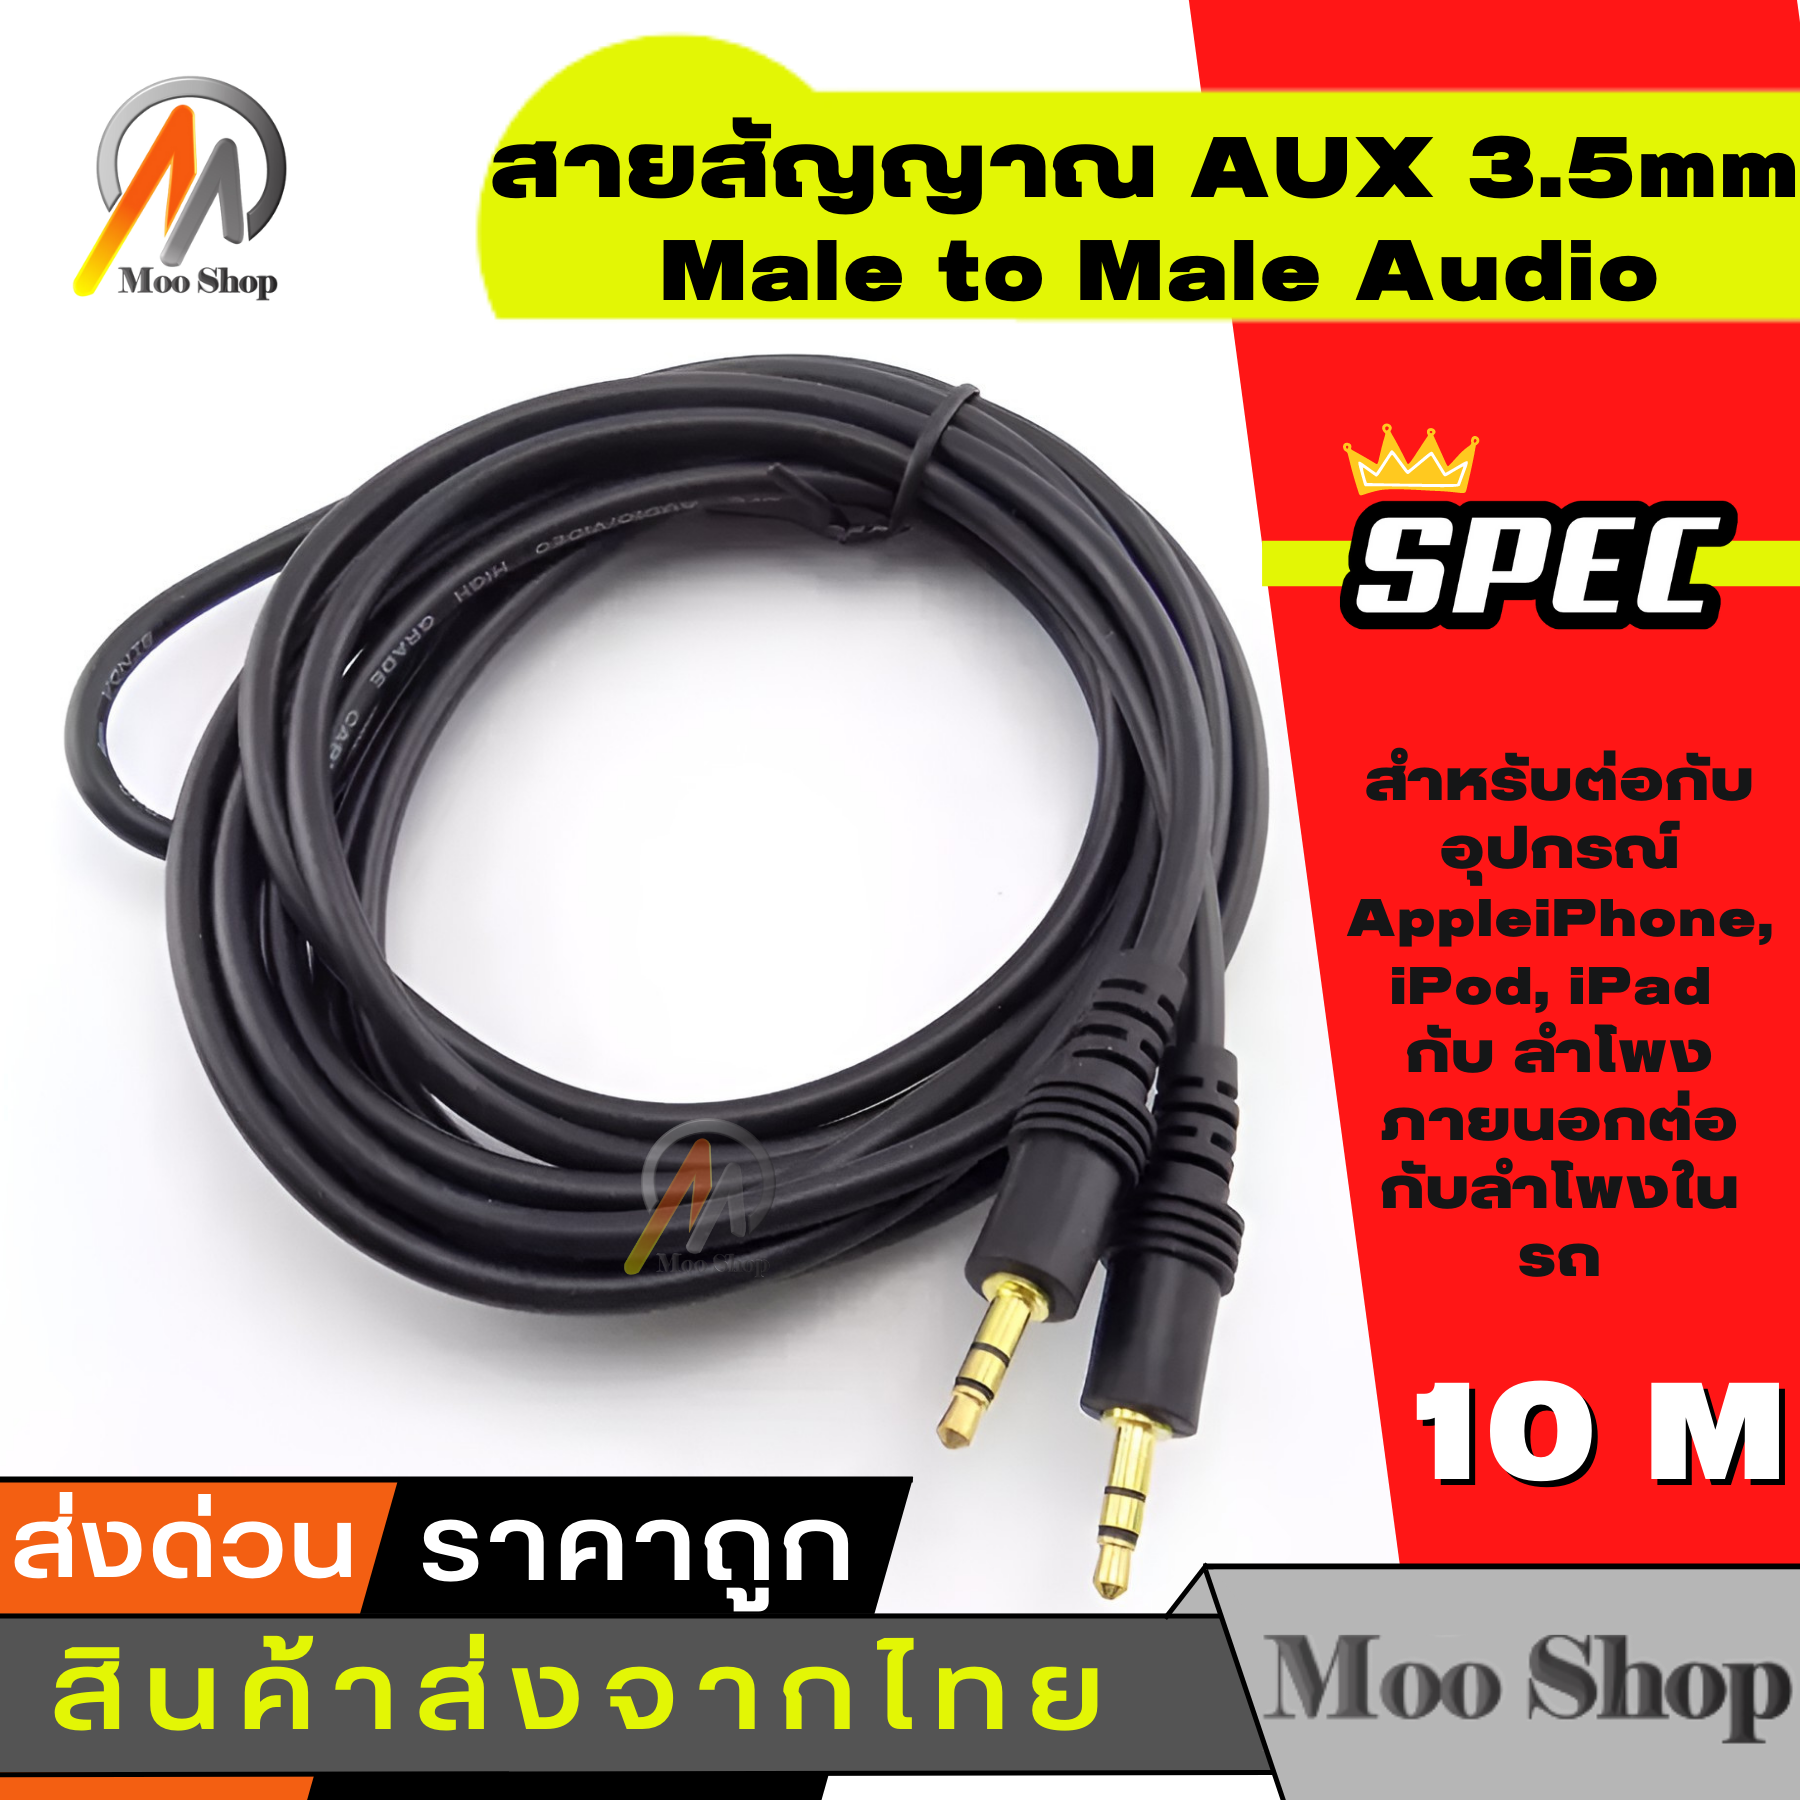 ภาพประกอบของ สายสัญญาณ ออดิโอ (AUX) 3.5mm หัว ผู้-ผู้ , สายแจ็ค3.5mm(Male to Male Audio Cable Stereo Aux Cable Cord) ยาว 10 เมตร